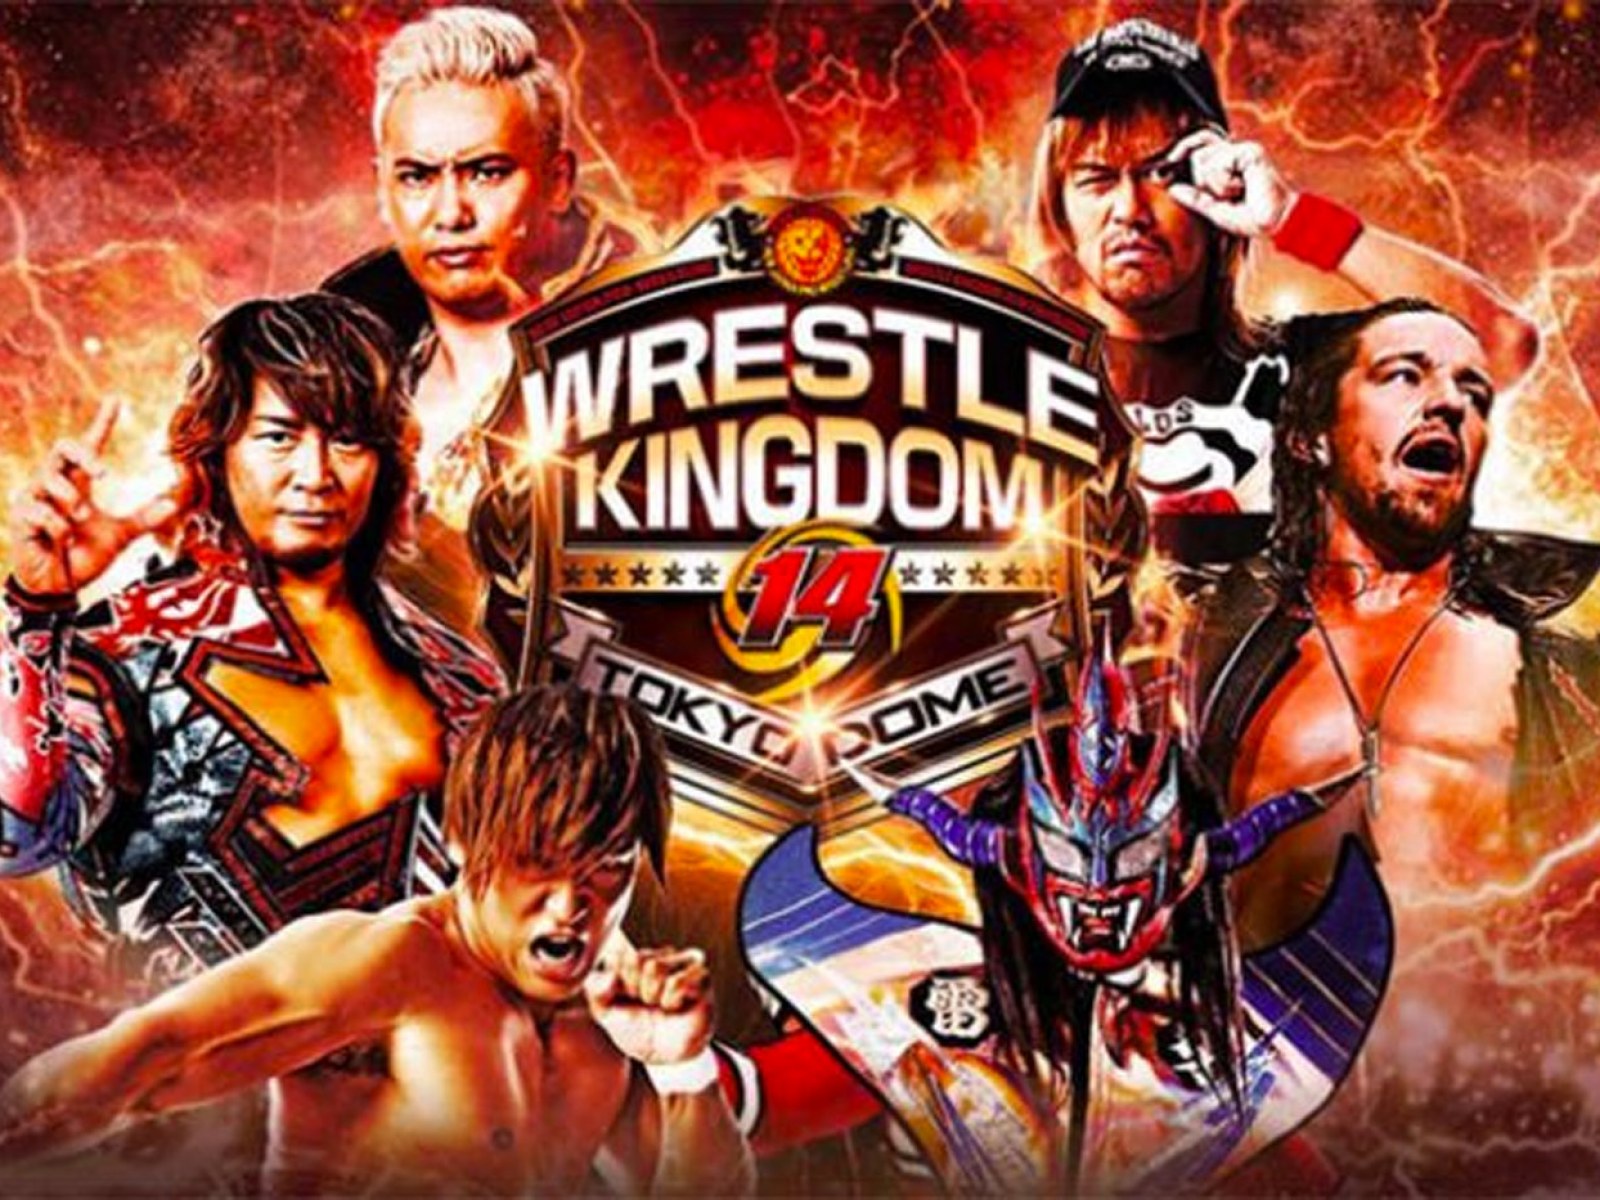 Watch: NJPW Wrestle Kingdom 14 Documentary Trailer